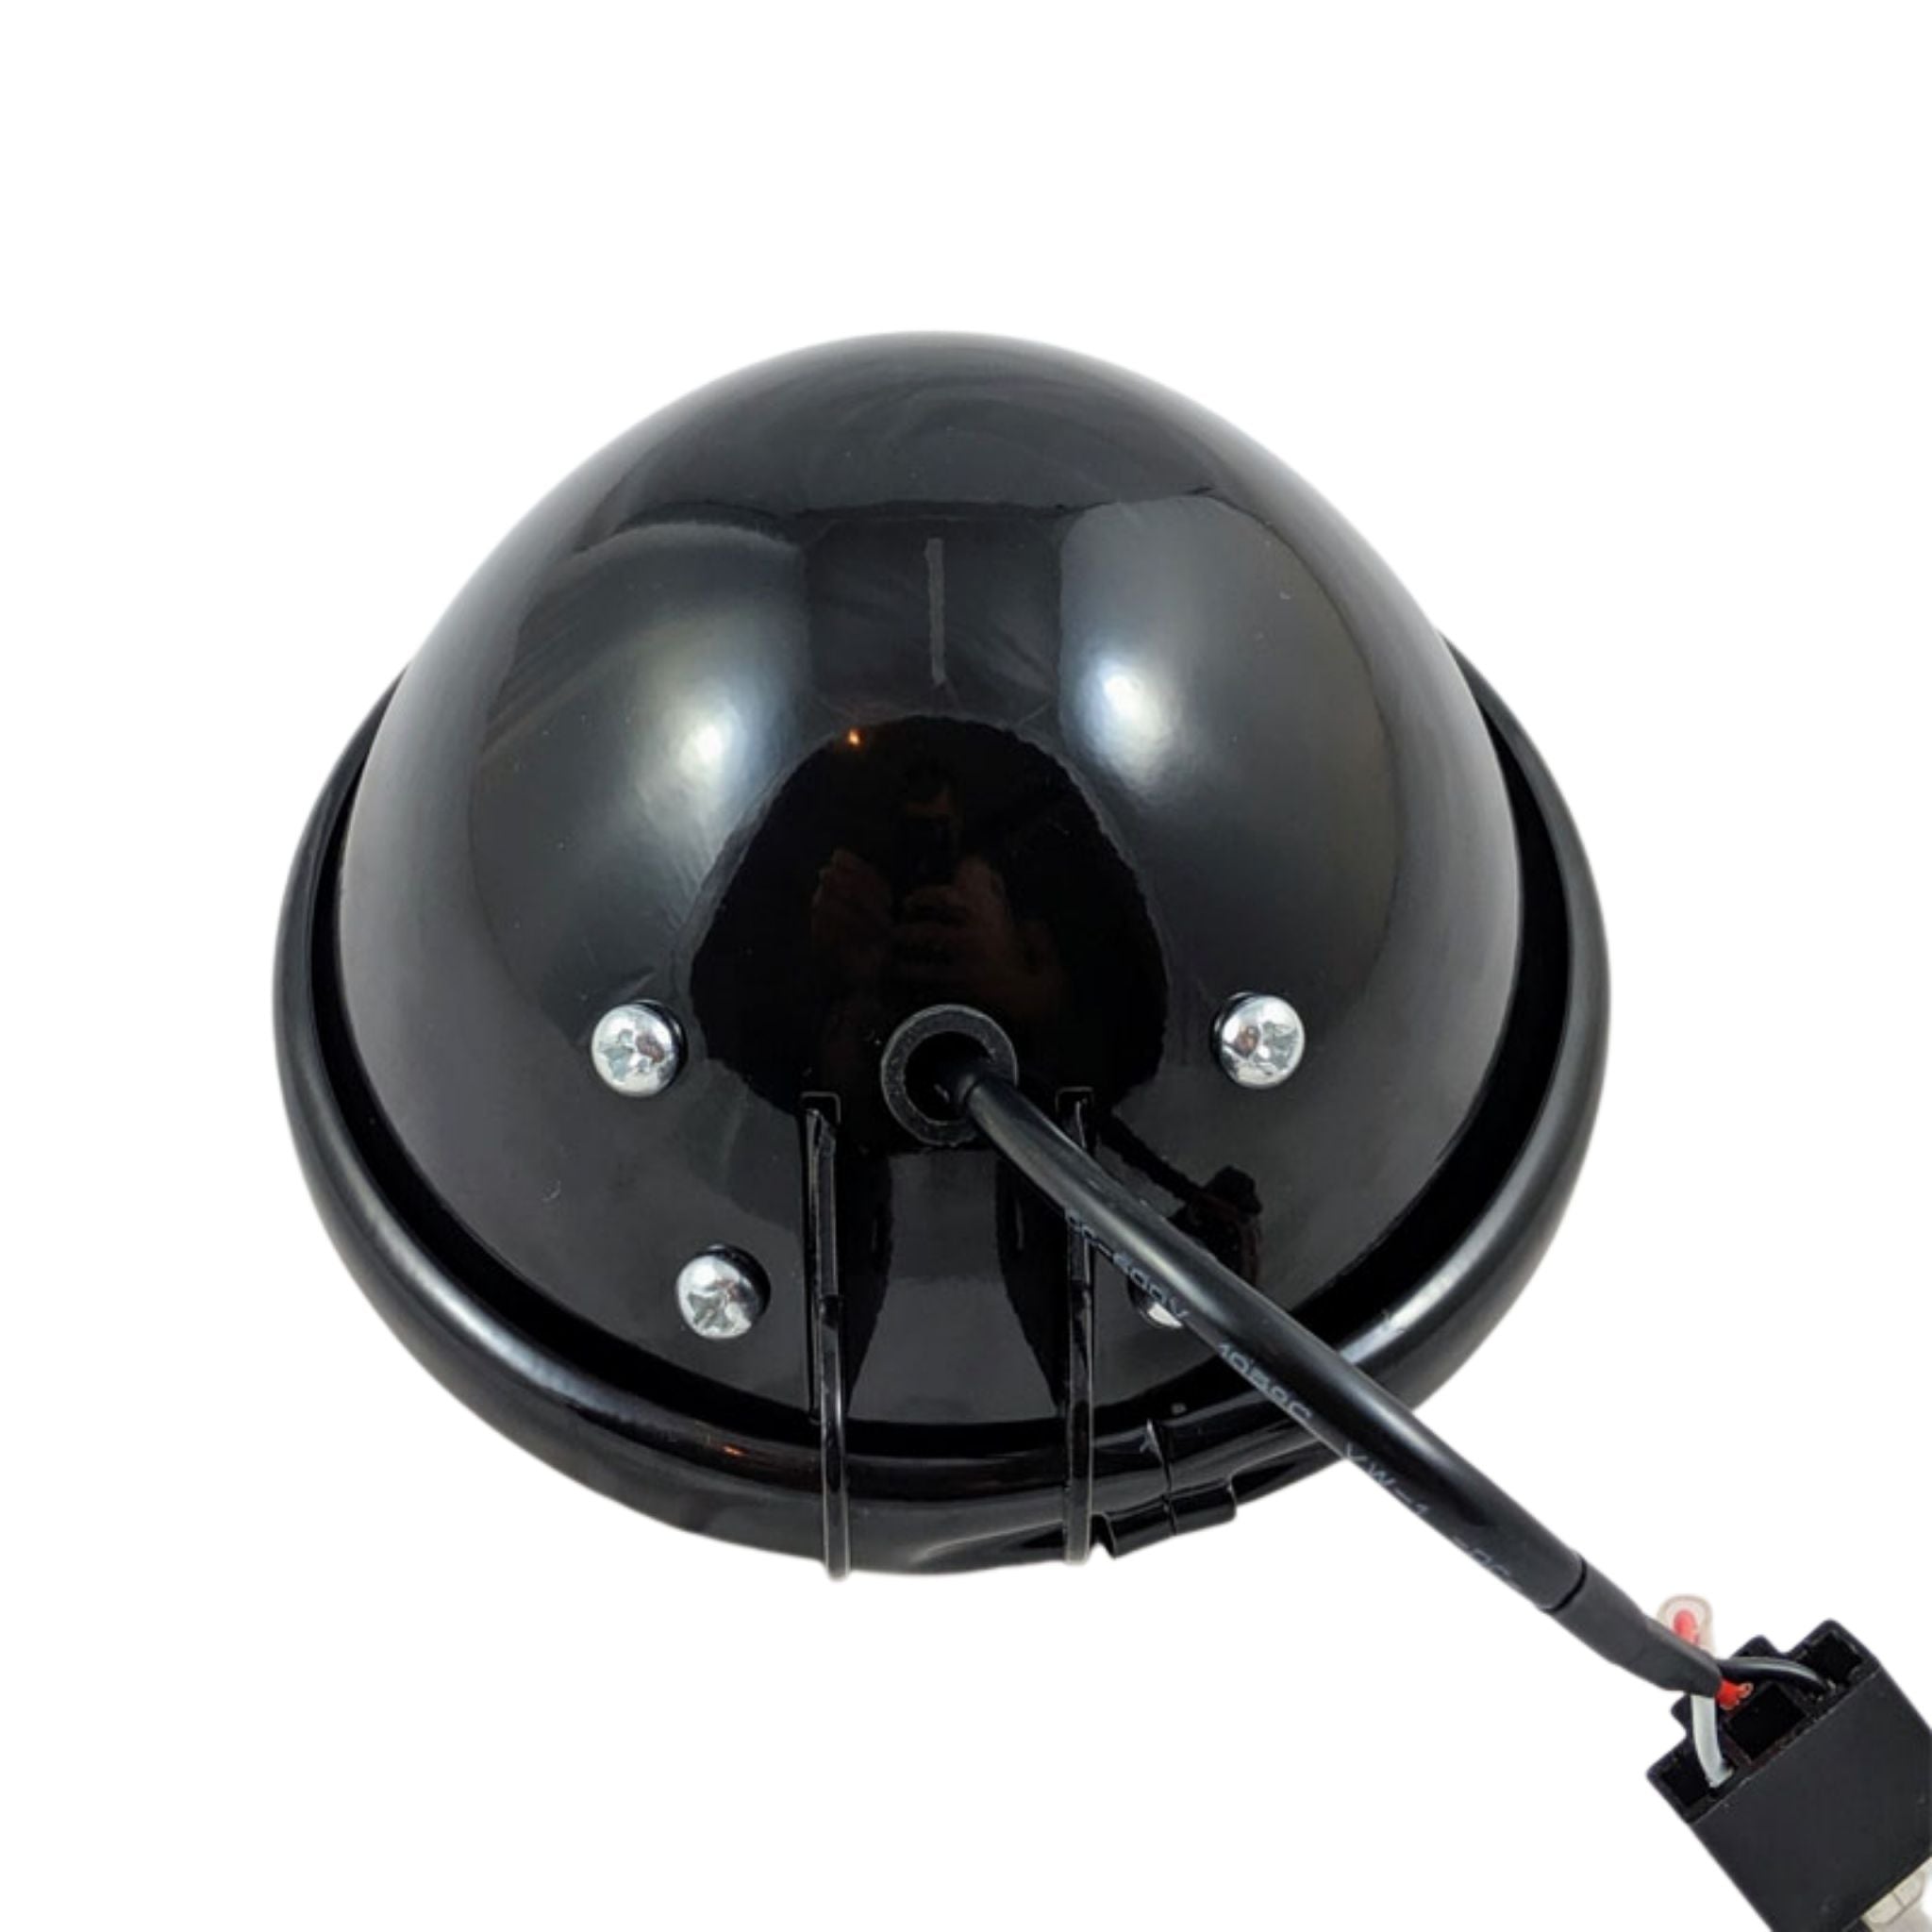 https://originalgaragemoto.com/cdn/shop/products/OG-5.75_-Black-Headlight-Bucket1.jpg?v=1647271395